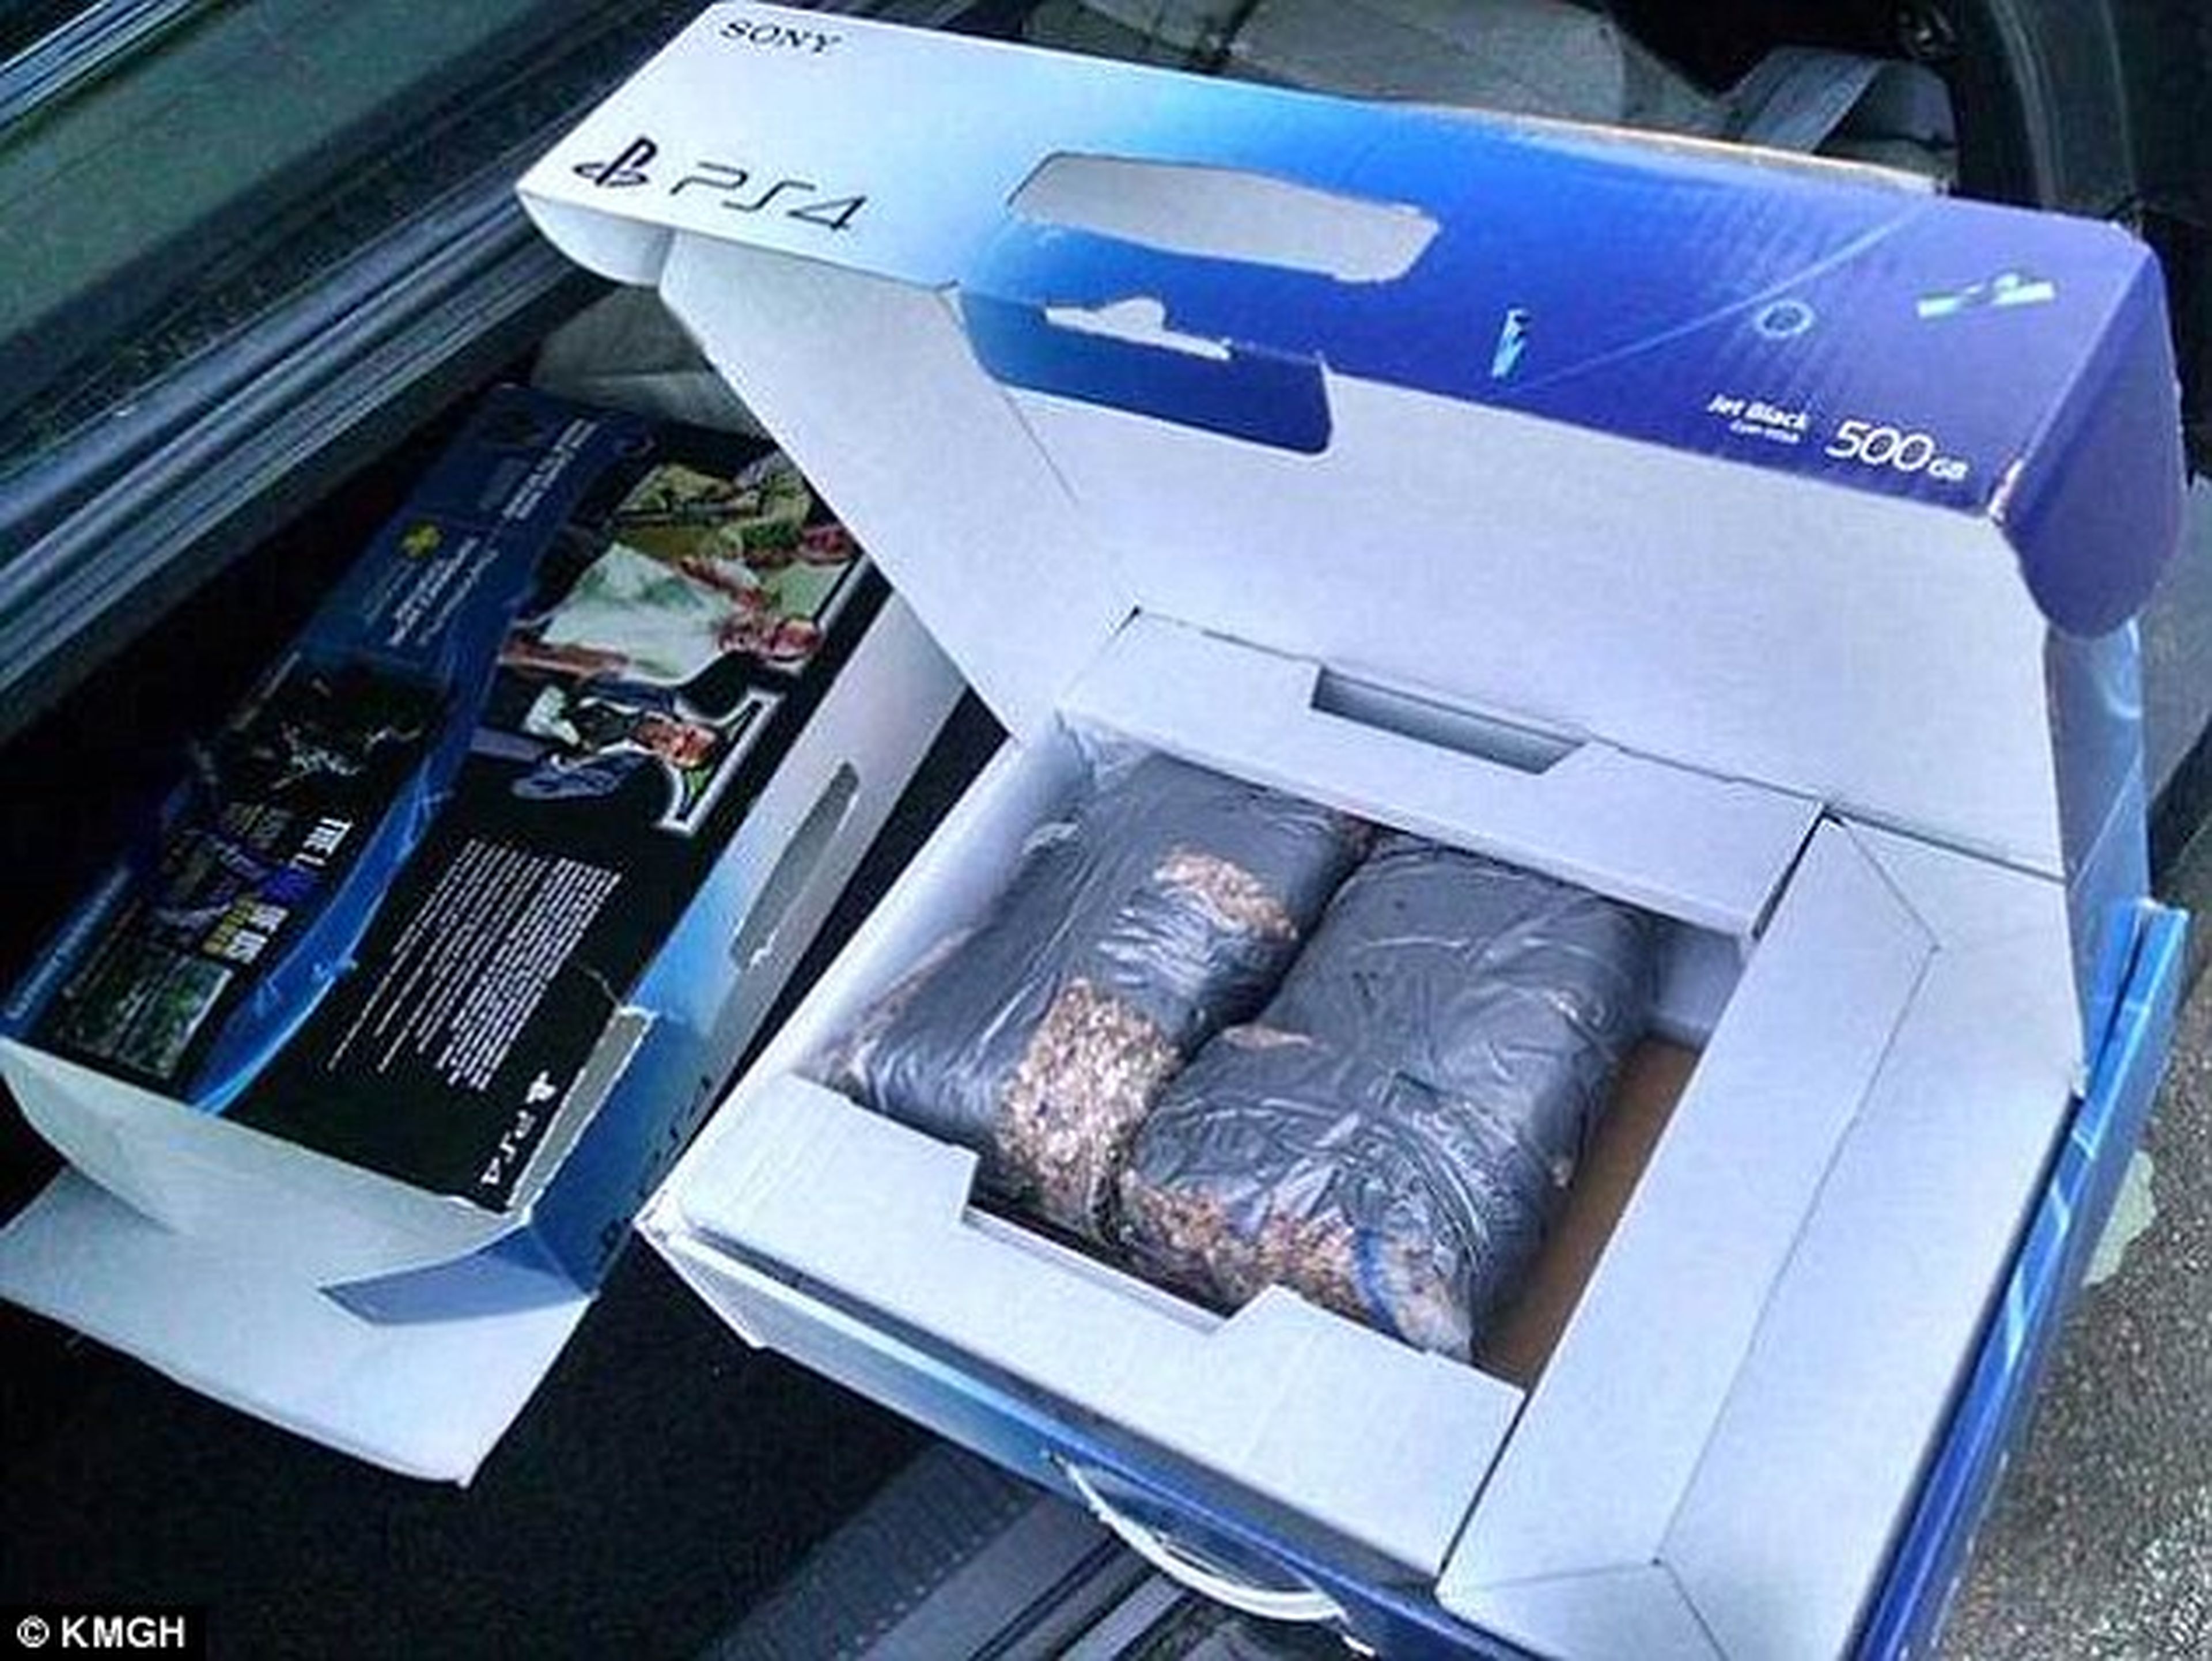 Un hombre compra en Walmart una PS4 y al abrir la caja se encuentra con bolsas de piedras